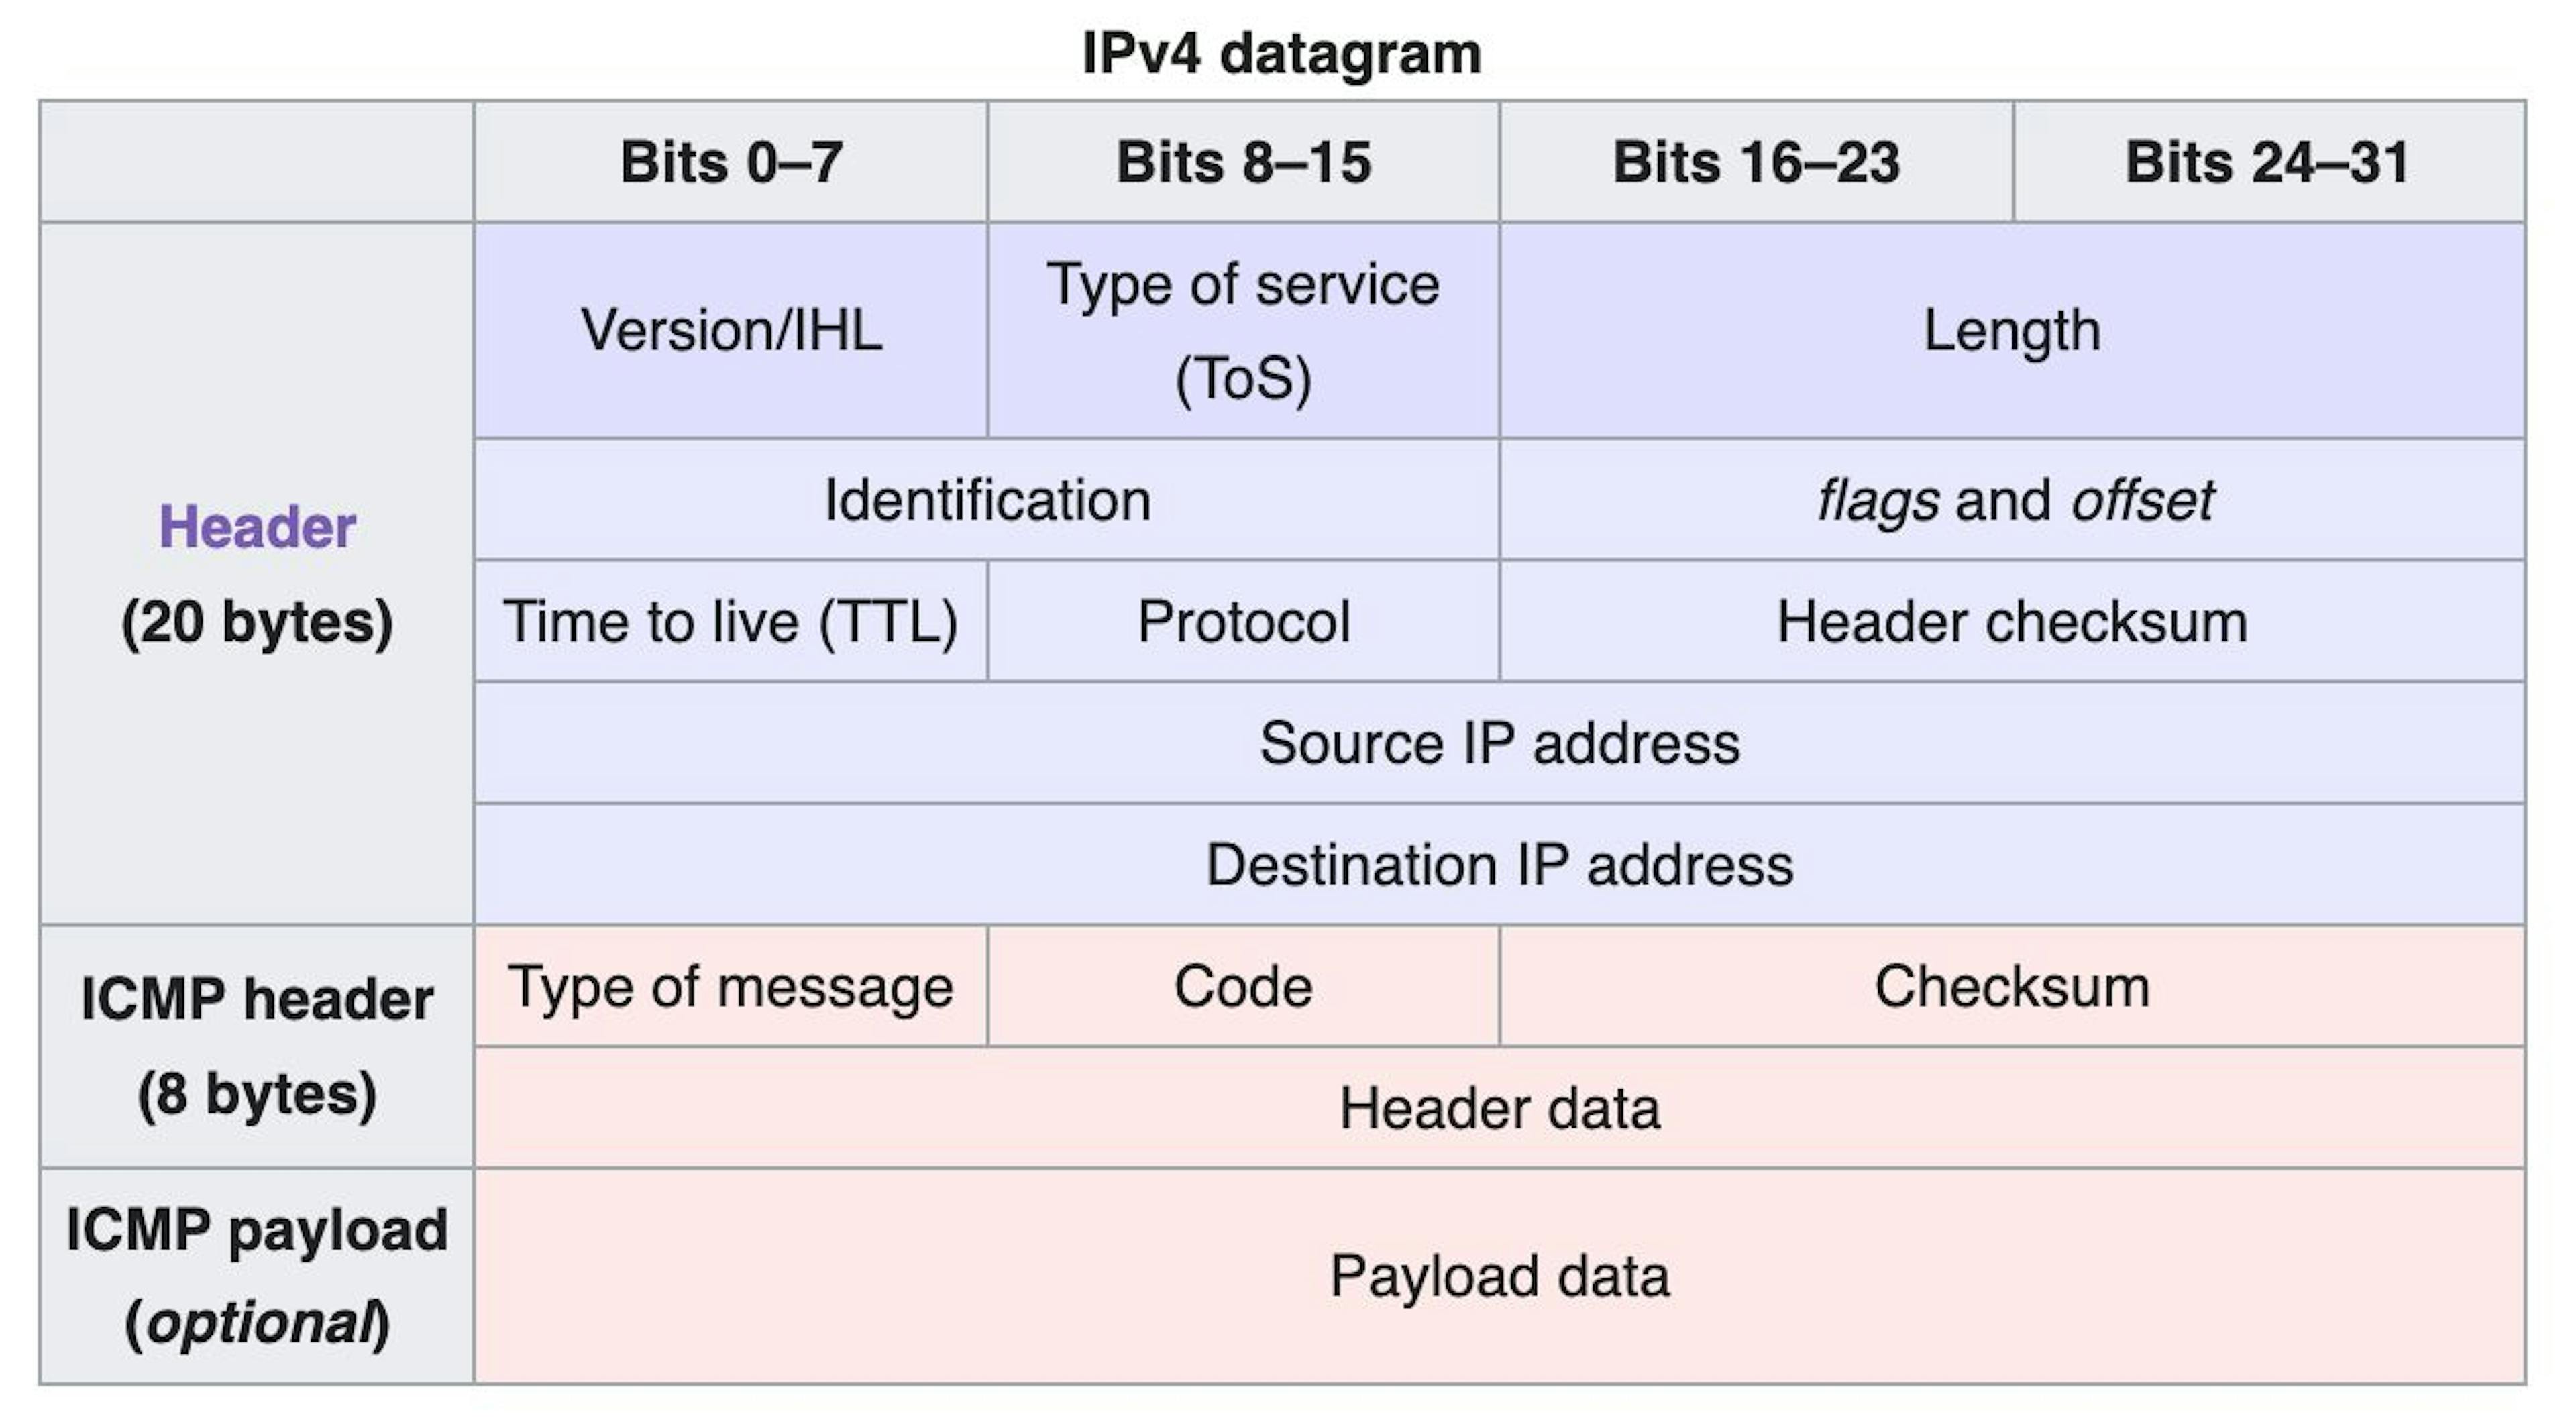 Full IPv4 datagram